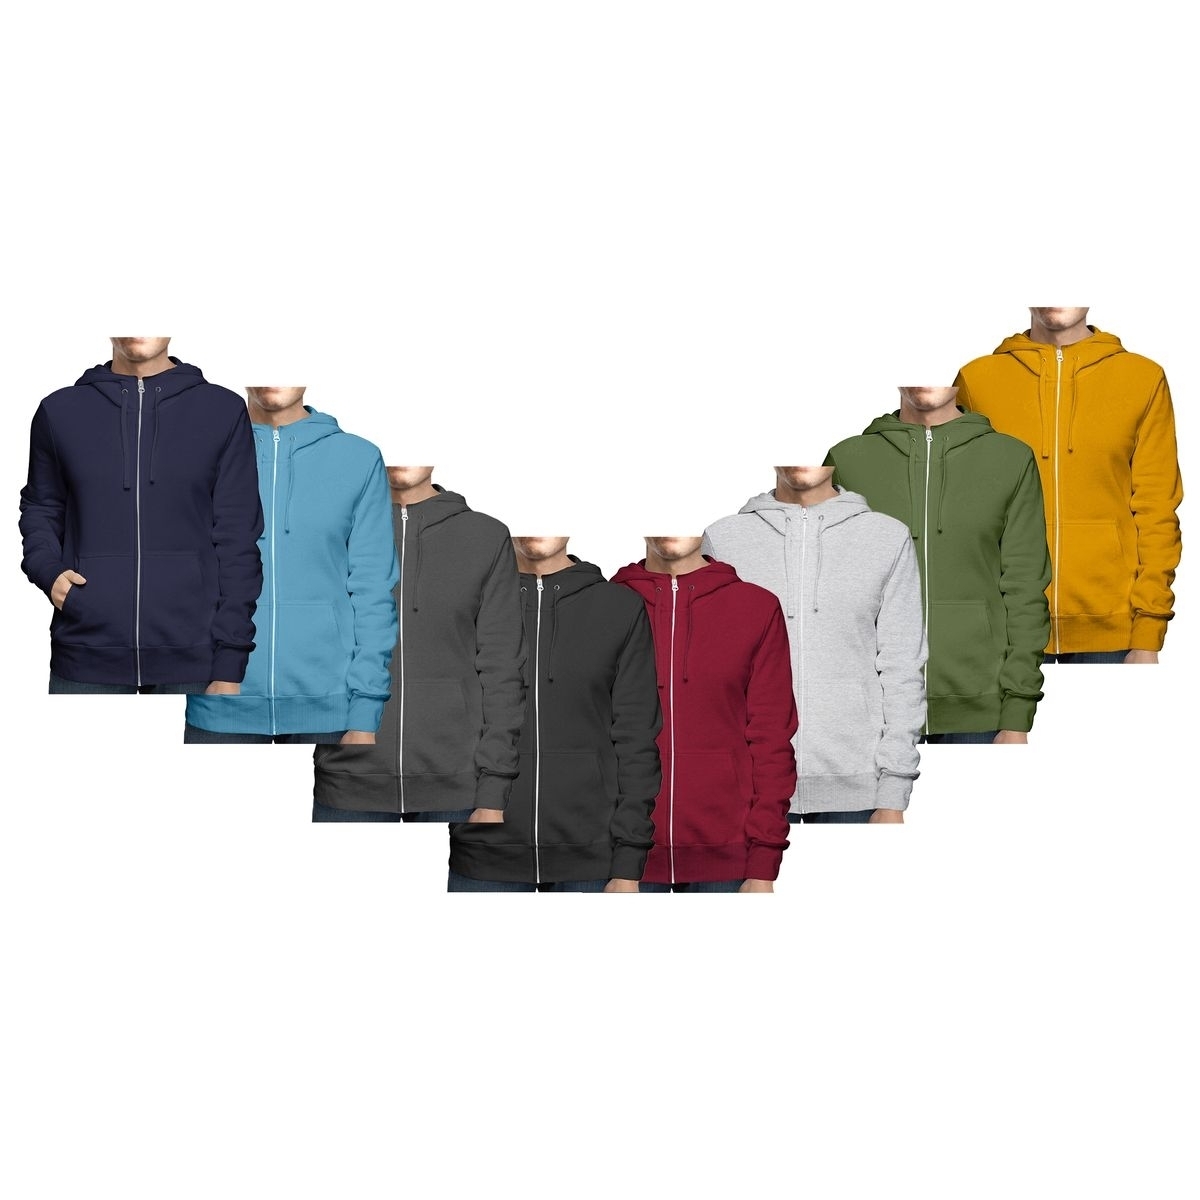 Men's Big & Tall Winter Warm Soft Cozy Full Zip-Up Fleece Lined Hoodie Sweatshirt - Charcoal, Small